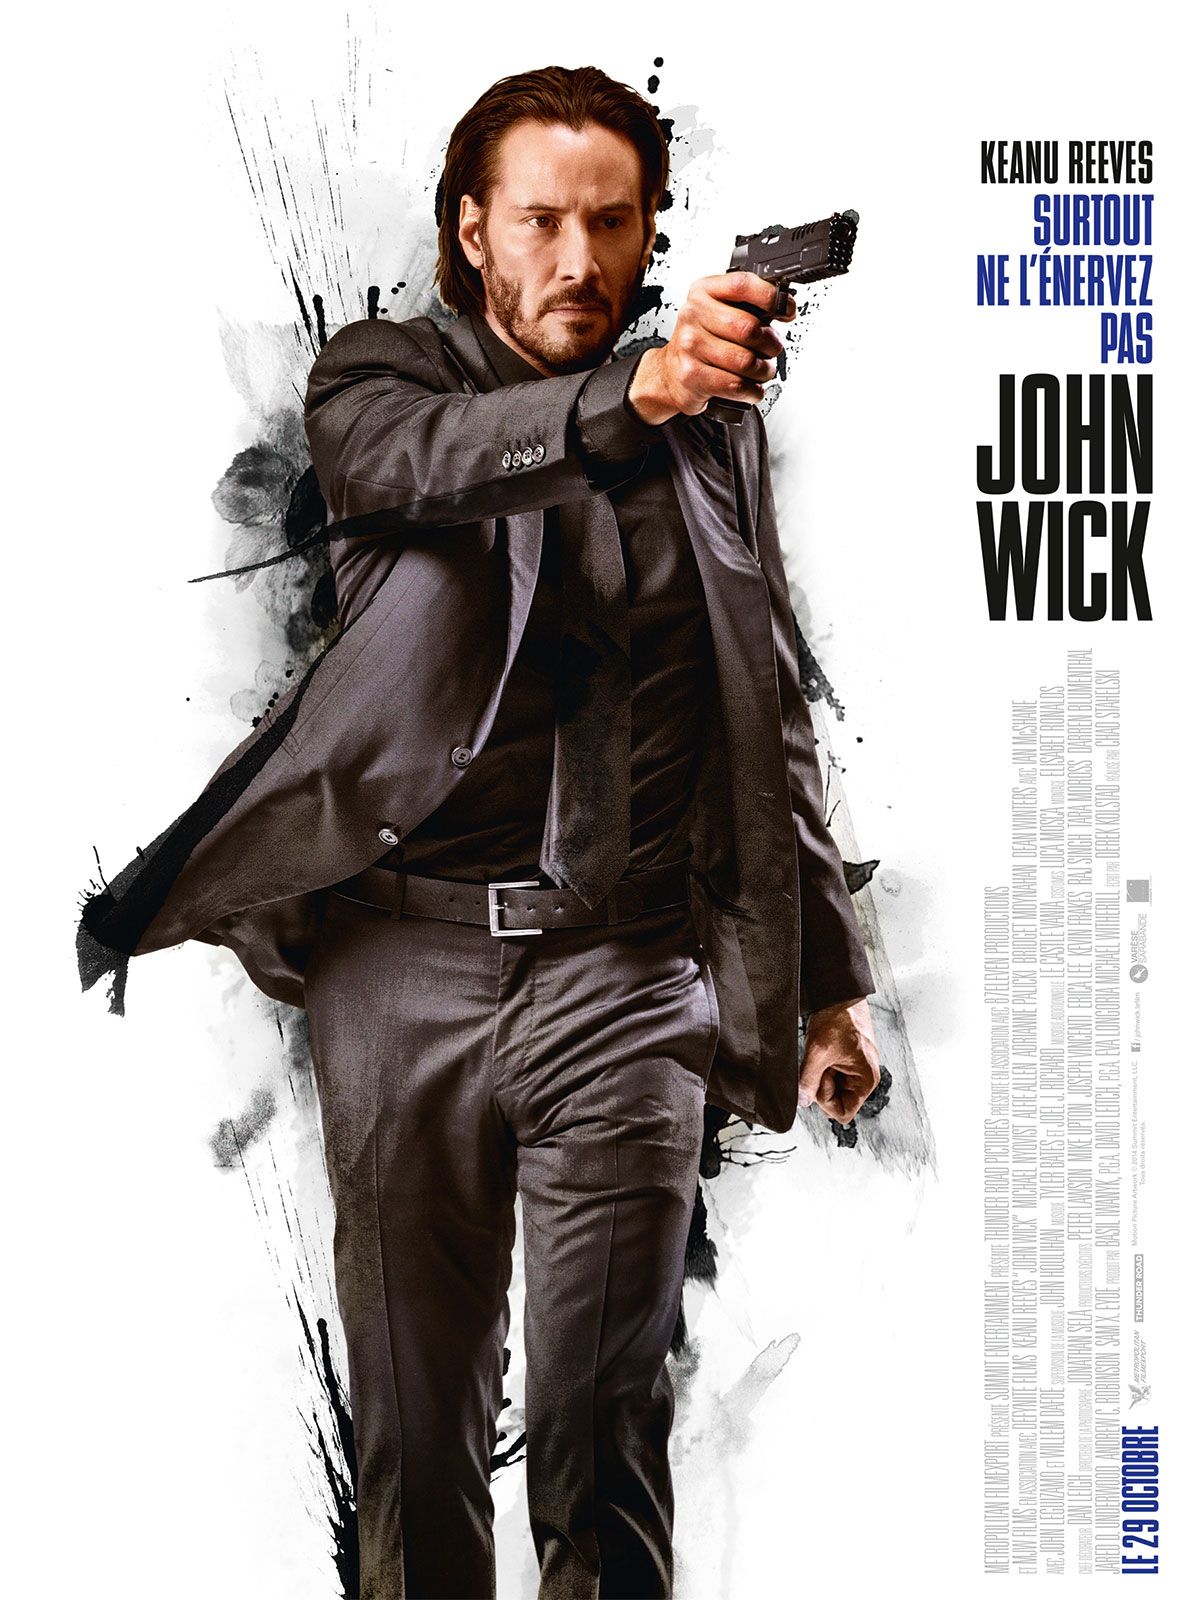 John Wick : キアヌ・リーブス主演の過激アクション映画のクライマックス「ジョン・ウィック 3 パラベラム」が、ユニークなアート ...